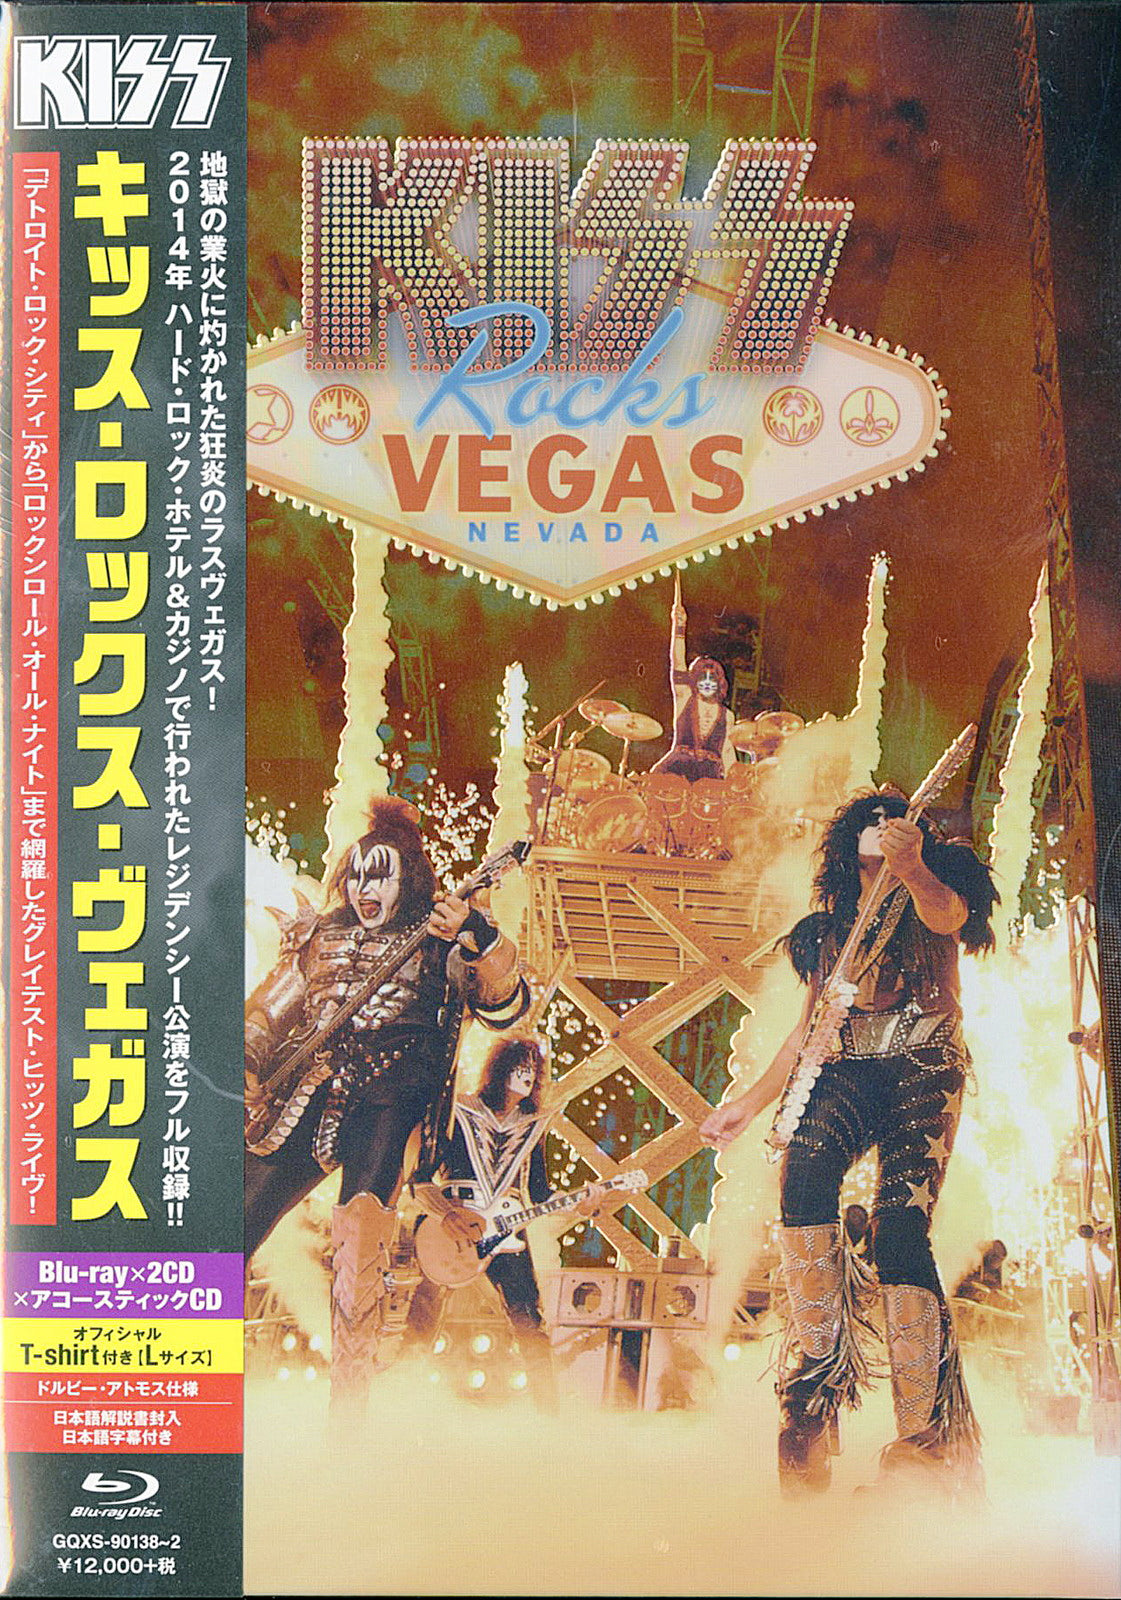 Wat mensen betreft Horzel Analytisch Kiss - Kiss Rocks Vegas - Japan Blu-ray+3CD+T-Shirt Limited Edition - CDs  Vinyl Japan Store